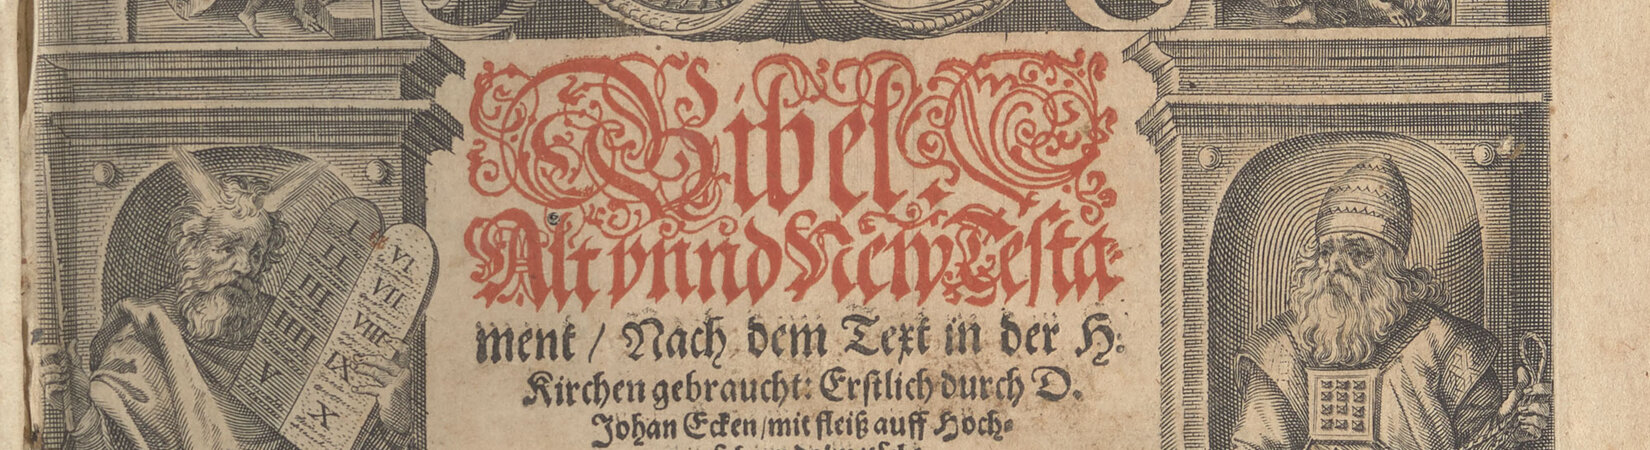 Digitalisierung von im VD17 nachgewiesenen unikalen Drucken der Forschungsbibliothek Gotha